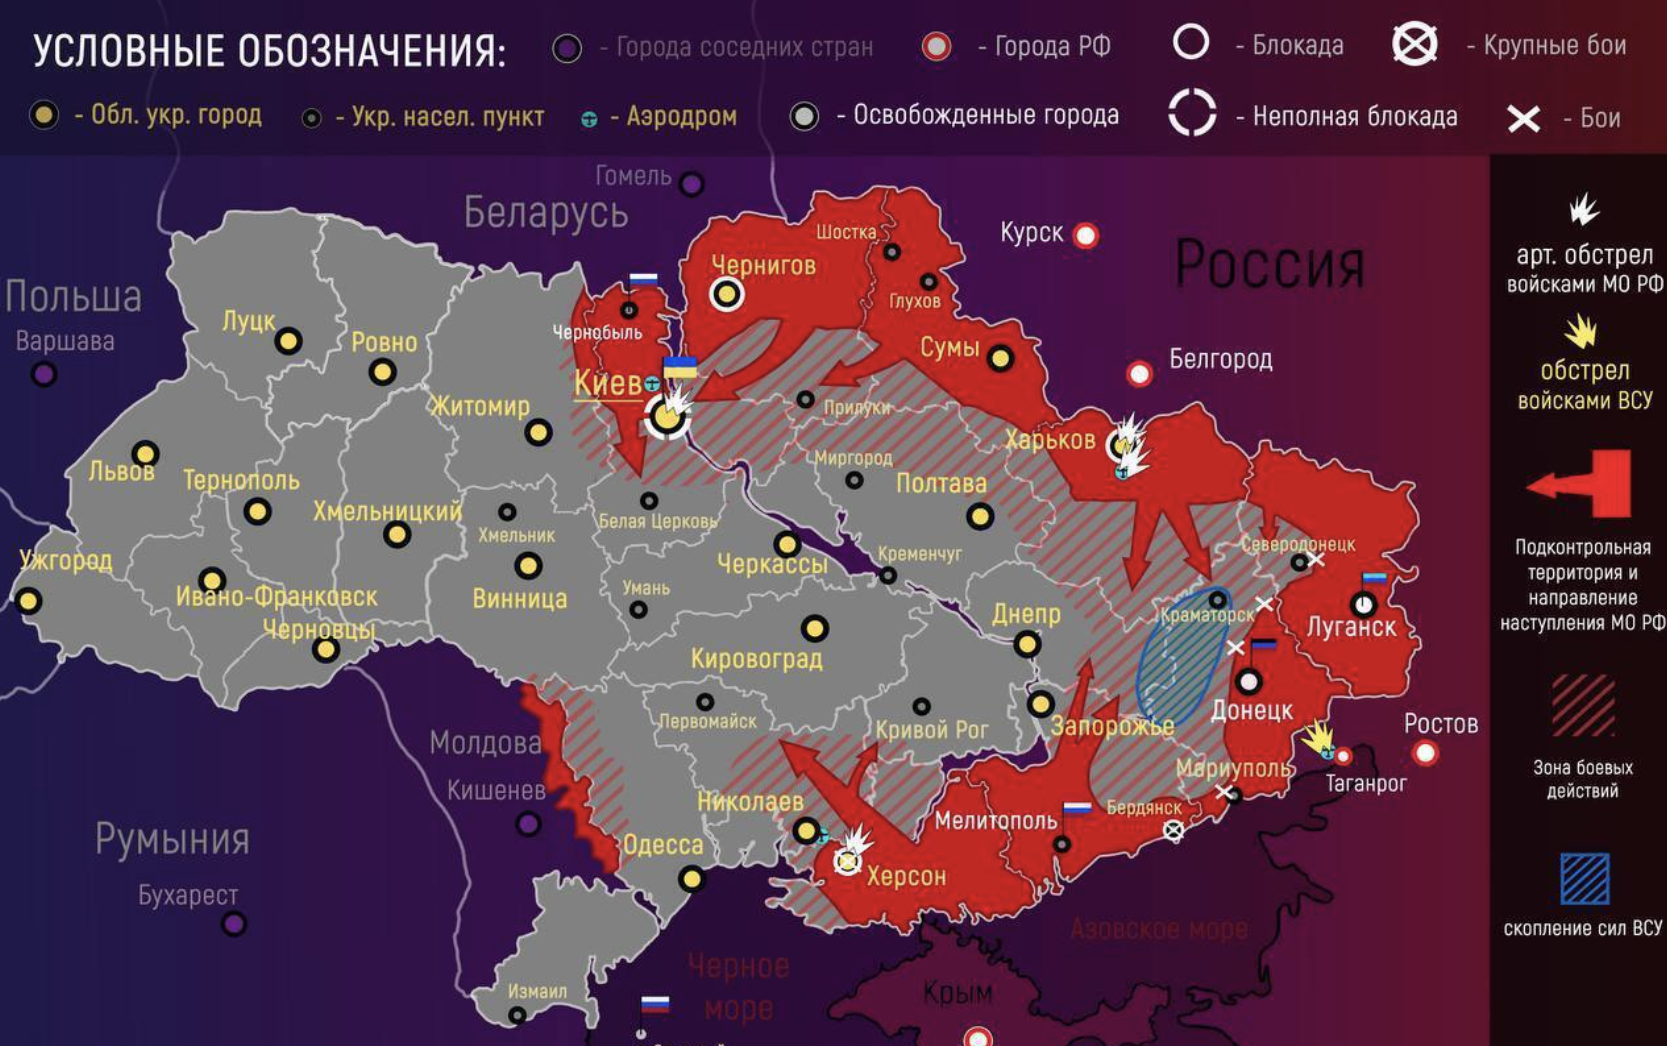 Где сейчас наши войска карта. Карта Украины с военными действиями сейчас 2022 сегодня. Карта боевых действий на Украине на сегодня 08.03.2022. Карта боевых действий на Украине на сегодня 2022 года. Карта боевых действий на Украине на 10.04.2022.